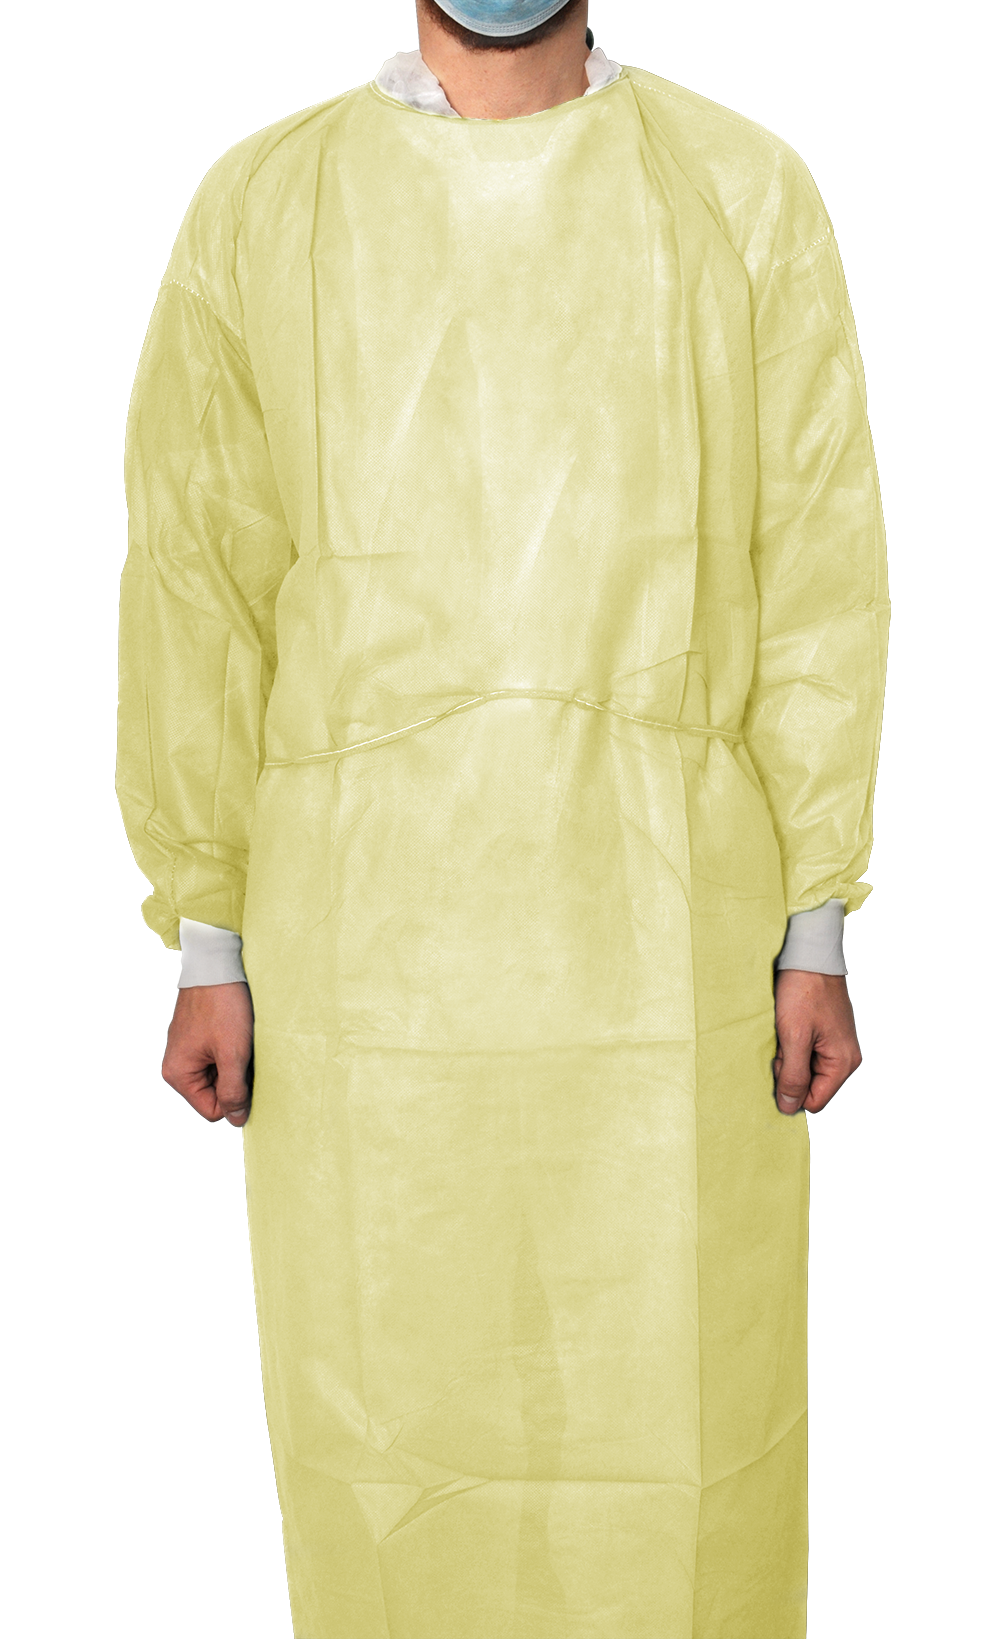 MaiMed Protect Coat ViruGuard, Schutzkittel aus Polypropylen-Vliesstoff, gelb, BW-Bündchen, 140x140cm, 10 Stück/Beutel, gelb, L-XL/140 x 140 cm